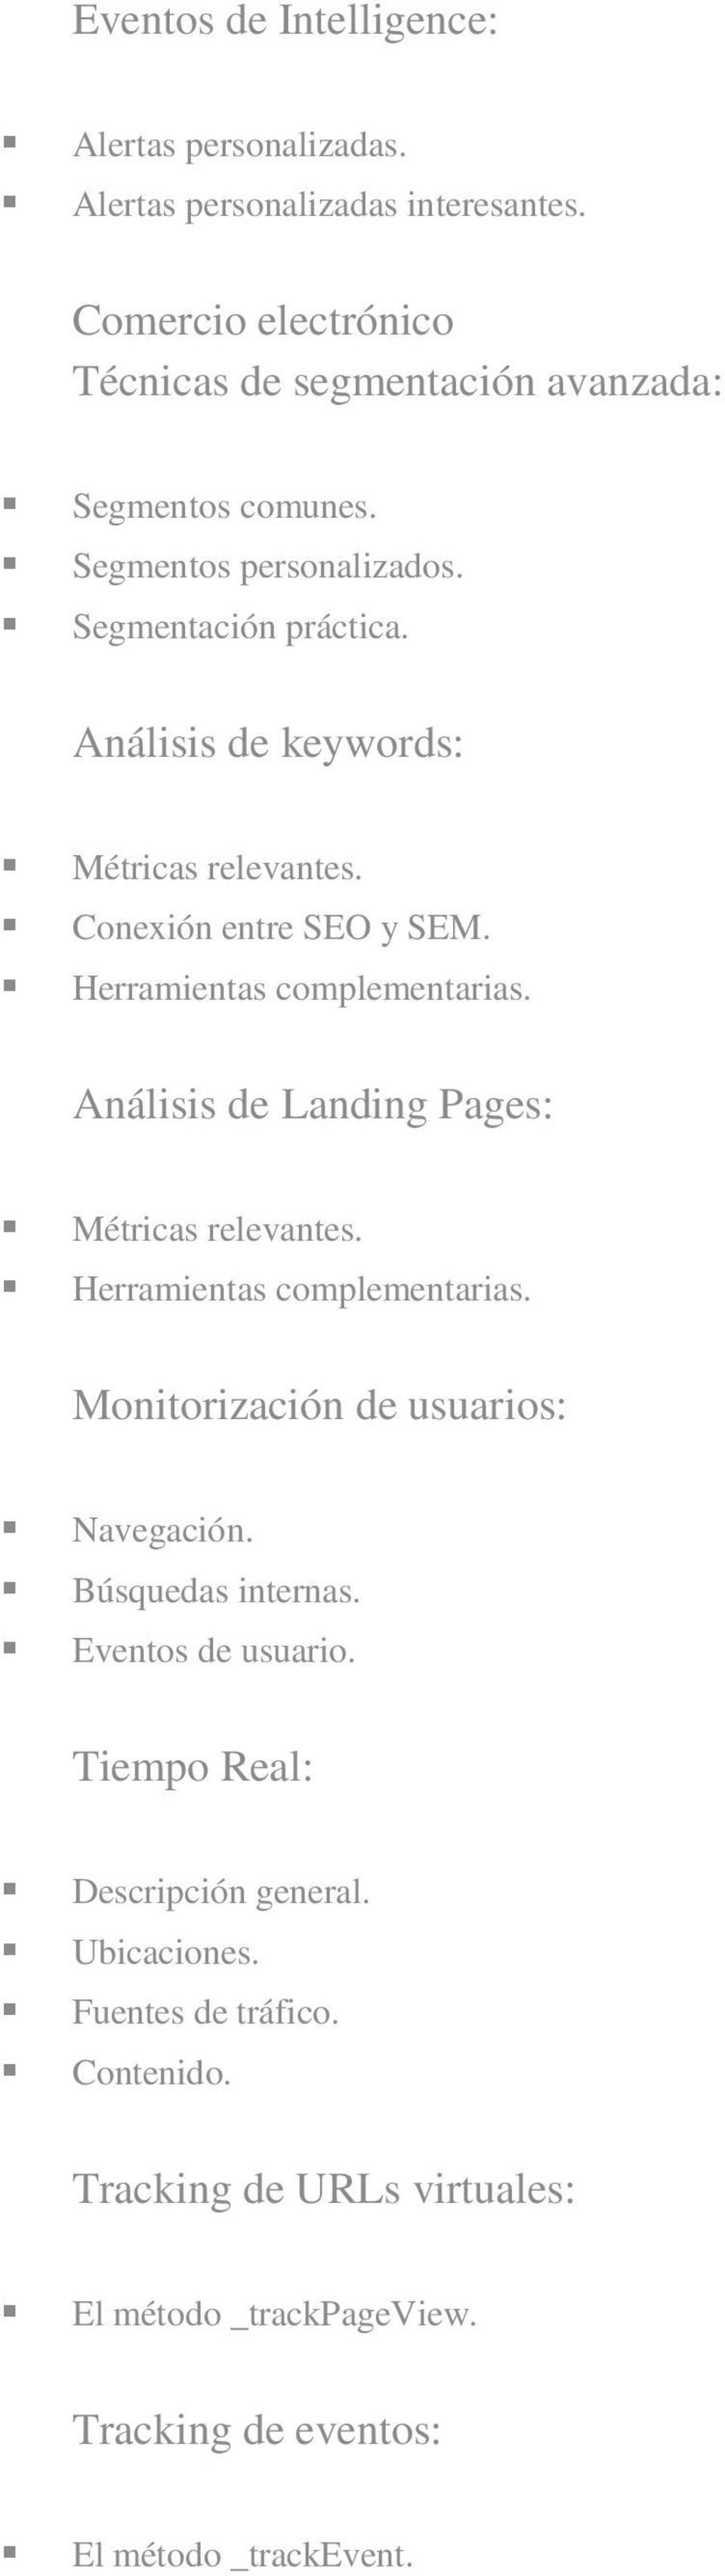 Análisis de Landing Pages: Métricas relevantes. Herramientas complementarias. Monitorización de usuarios: Navegación. Búsquedas internas. Eventos de usuario.